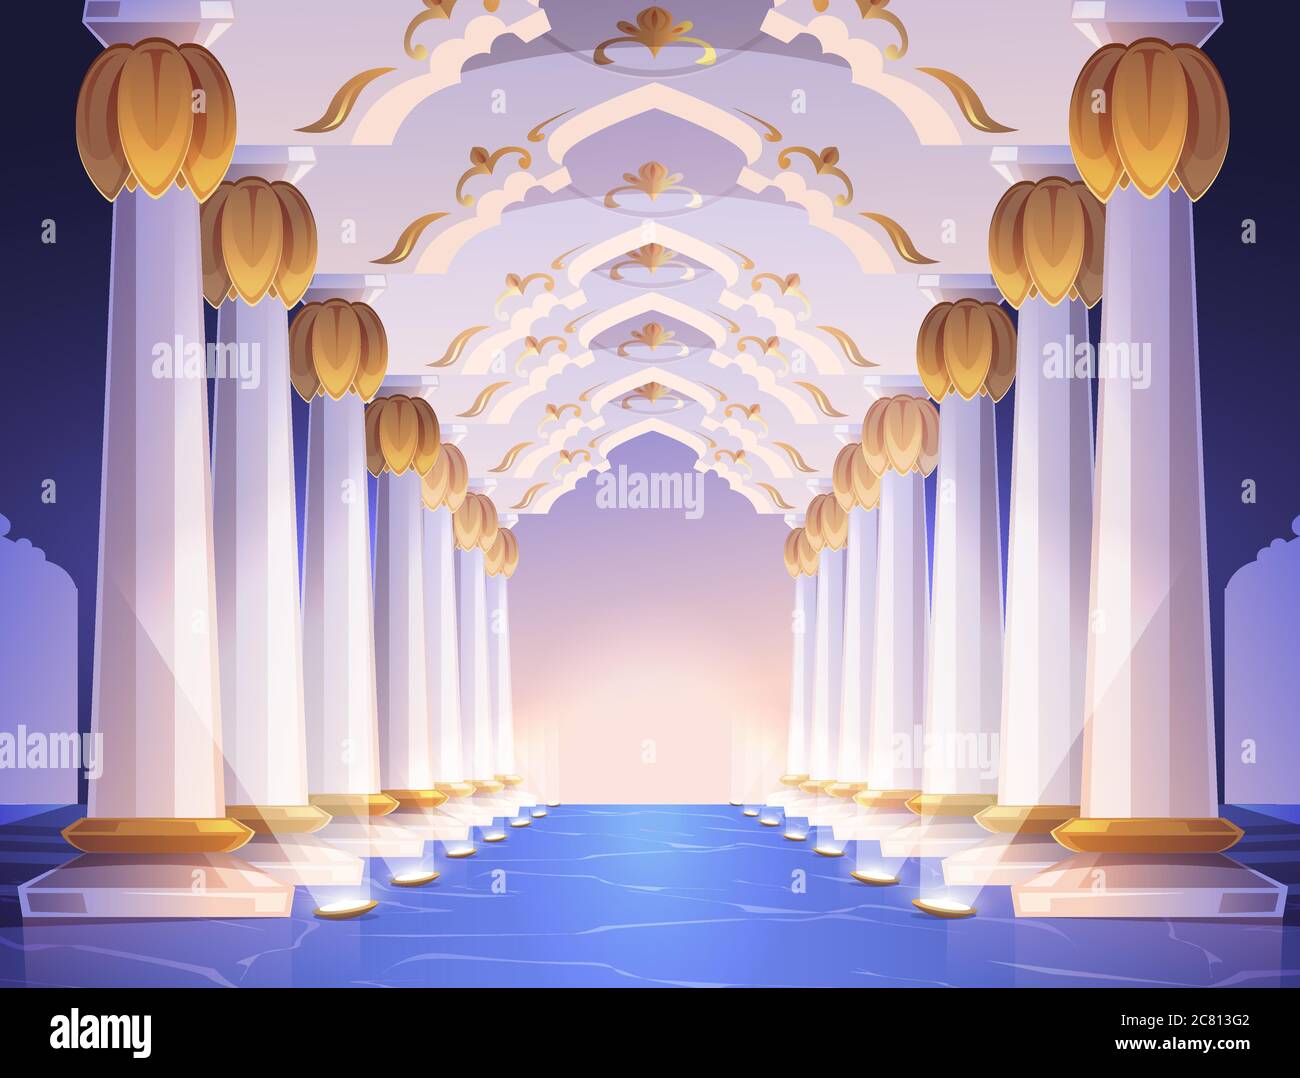 Corridoio con colonne e archi in palazzo. Interno di un cartone animato vettoriale con colonne in marmo bianco con ornamento dorato. Galleria vuota con colonnato barocco illuminato da faretti a pavimento Illustrazione Vettoriale